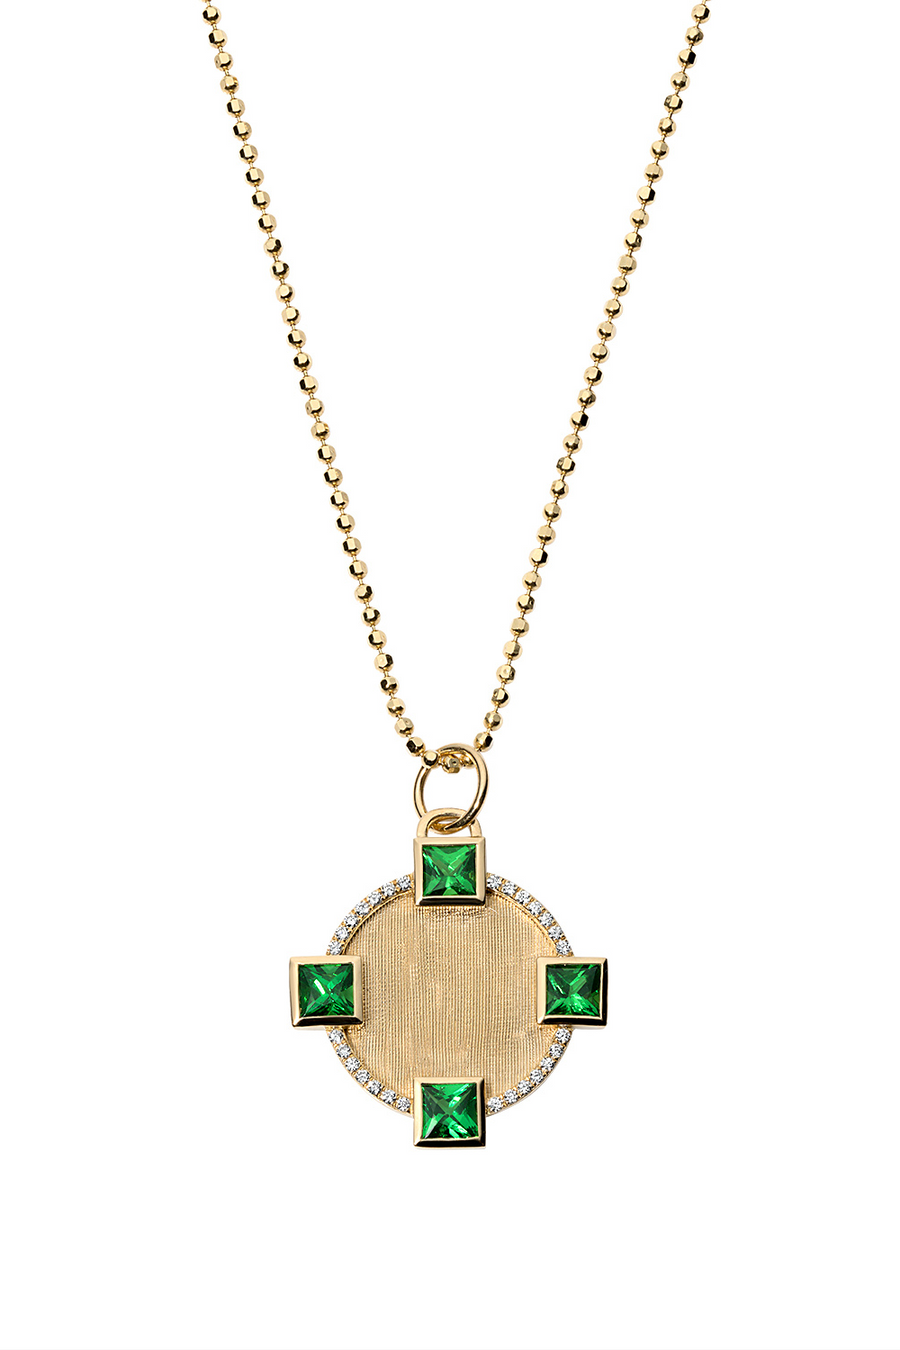 Green garnet round pendant charm in florentine 18k gold.